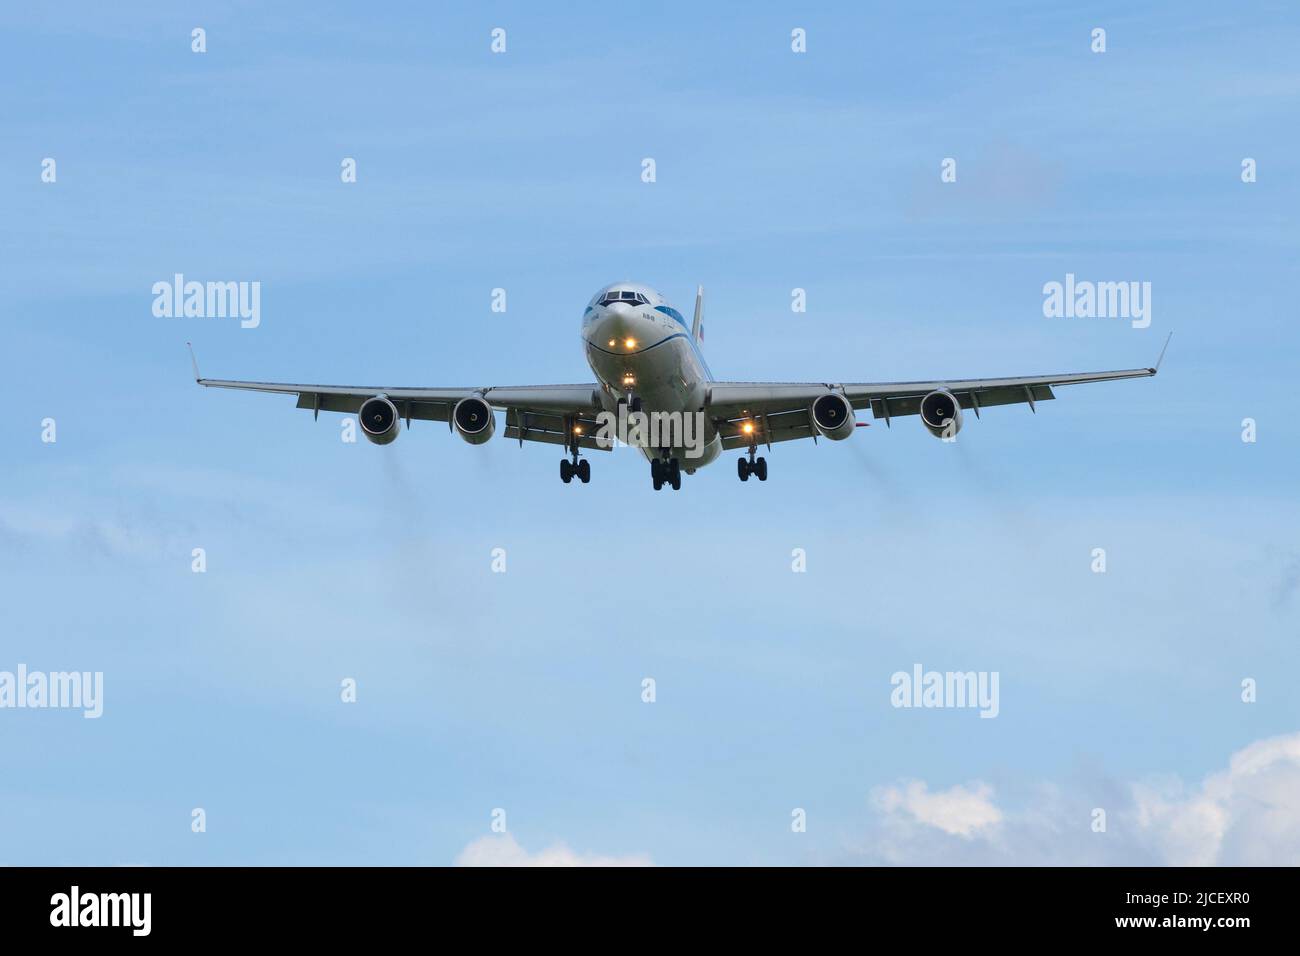 SANKT PETERSBURG, RUSSLAND - 02. JUNI 2022: Das Flugzeug Il-96-400 (RA-96104) nähert sich dem Gleitweg am blauen Himmel Stockfoto